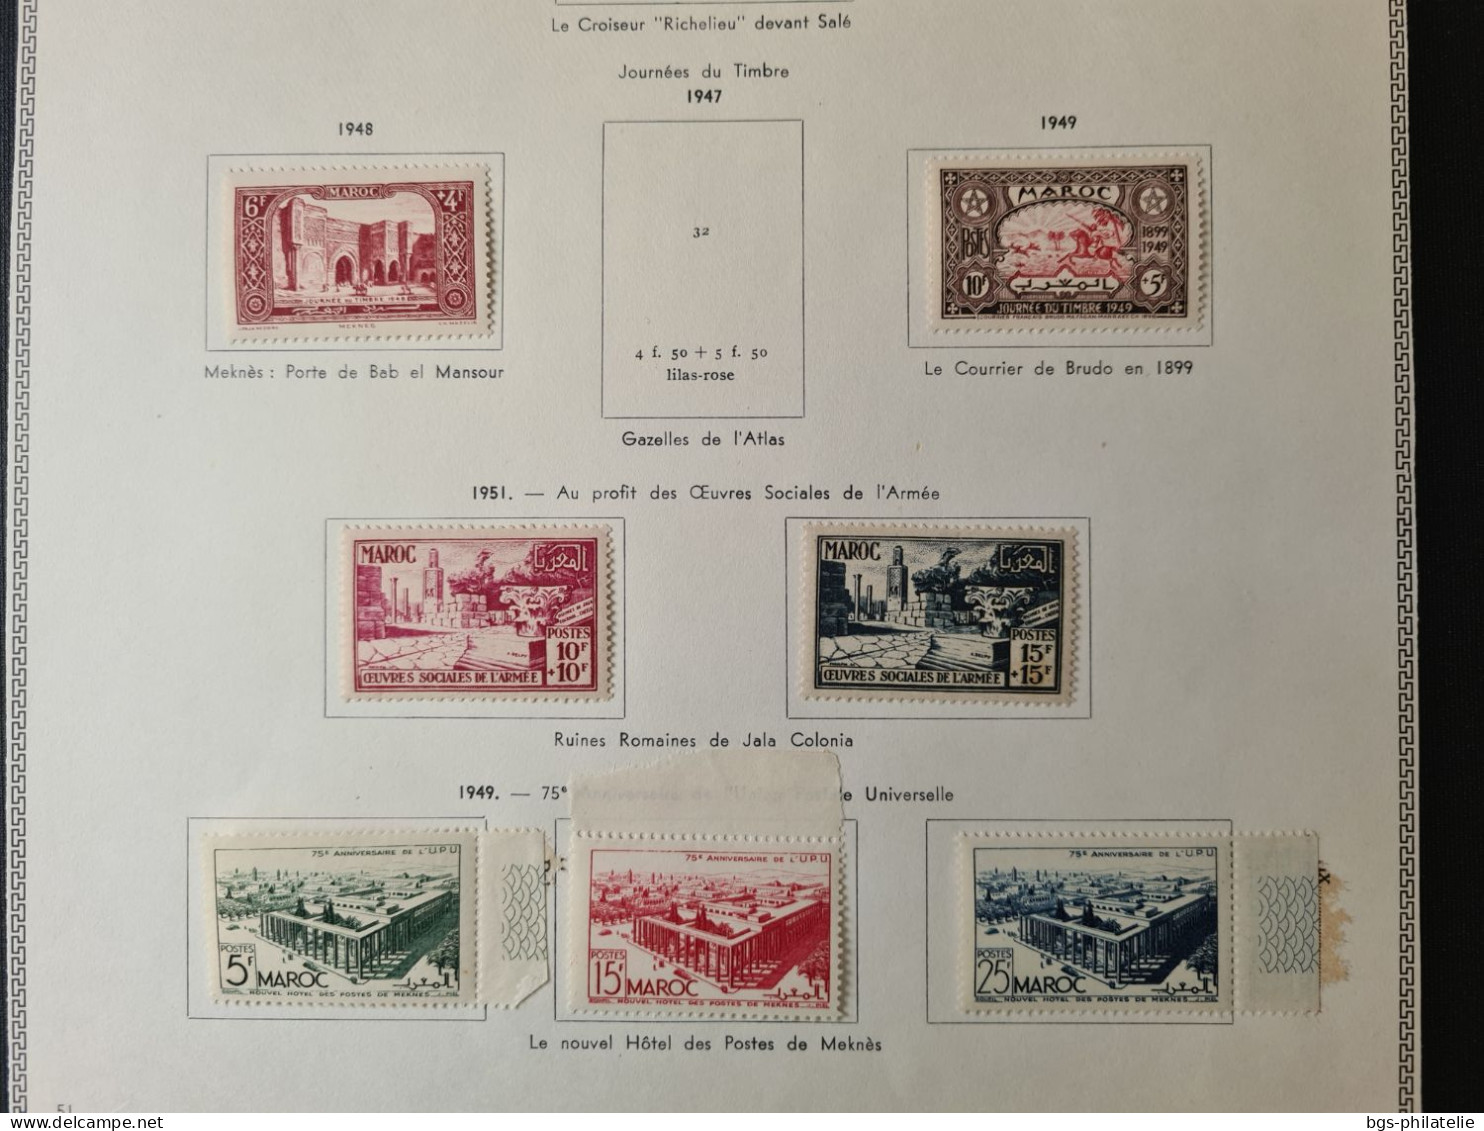 Collection de timbres du Maroc.